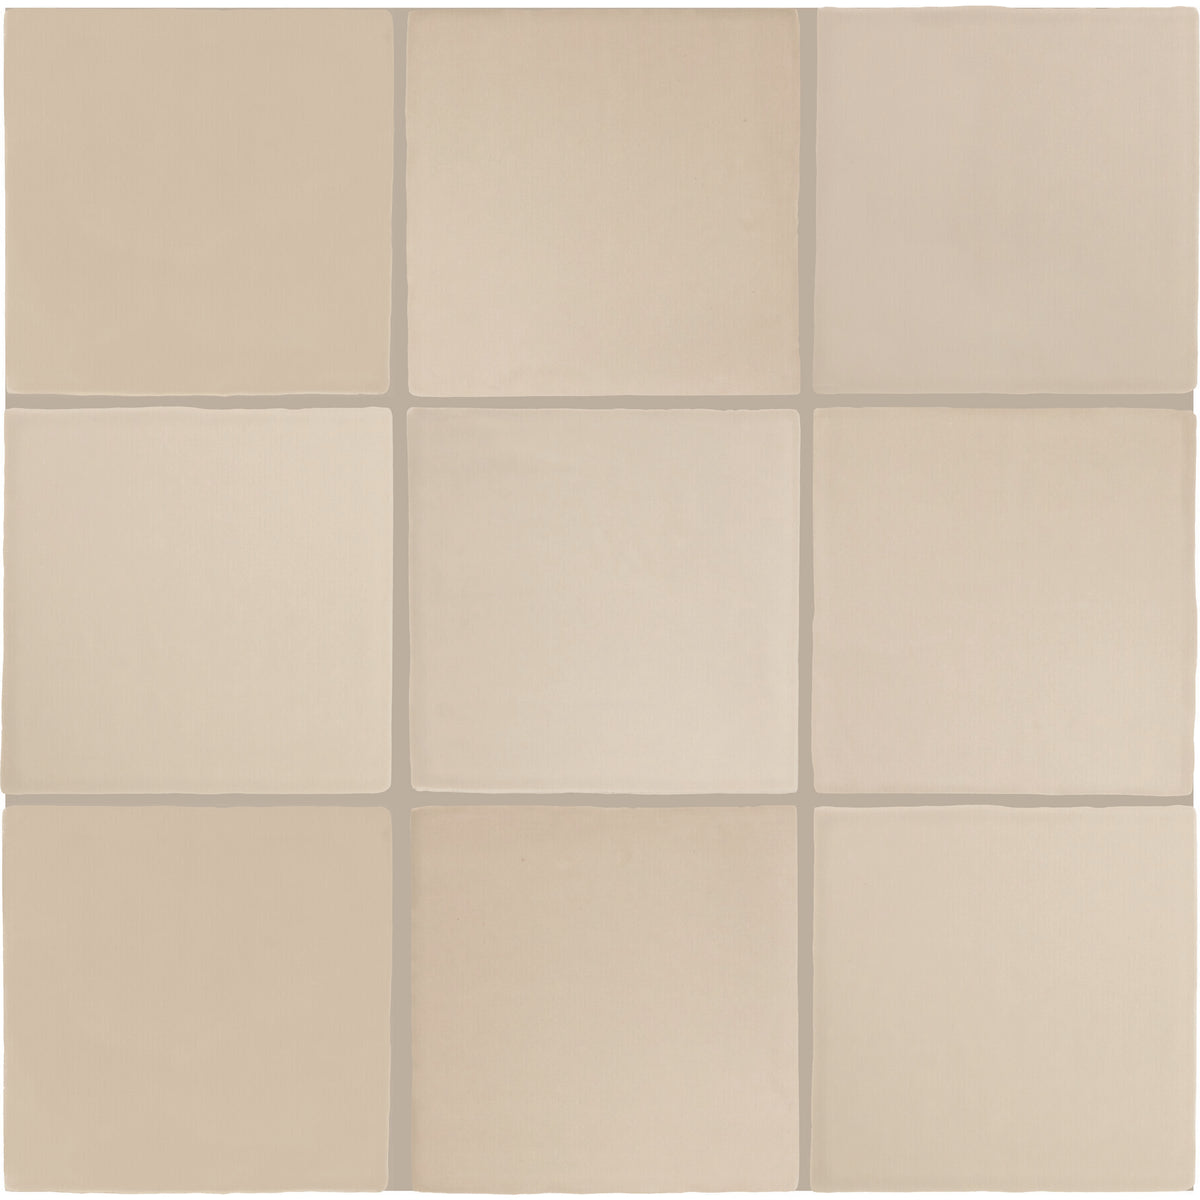 Daltile - Farrier - 5 in. x 5 in. Glazed Ceramic Wall Tile - Palomino Variation